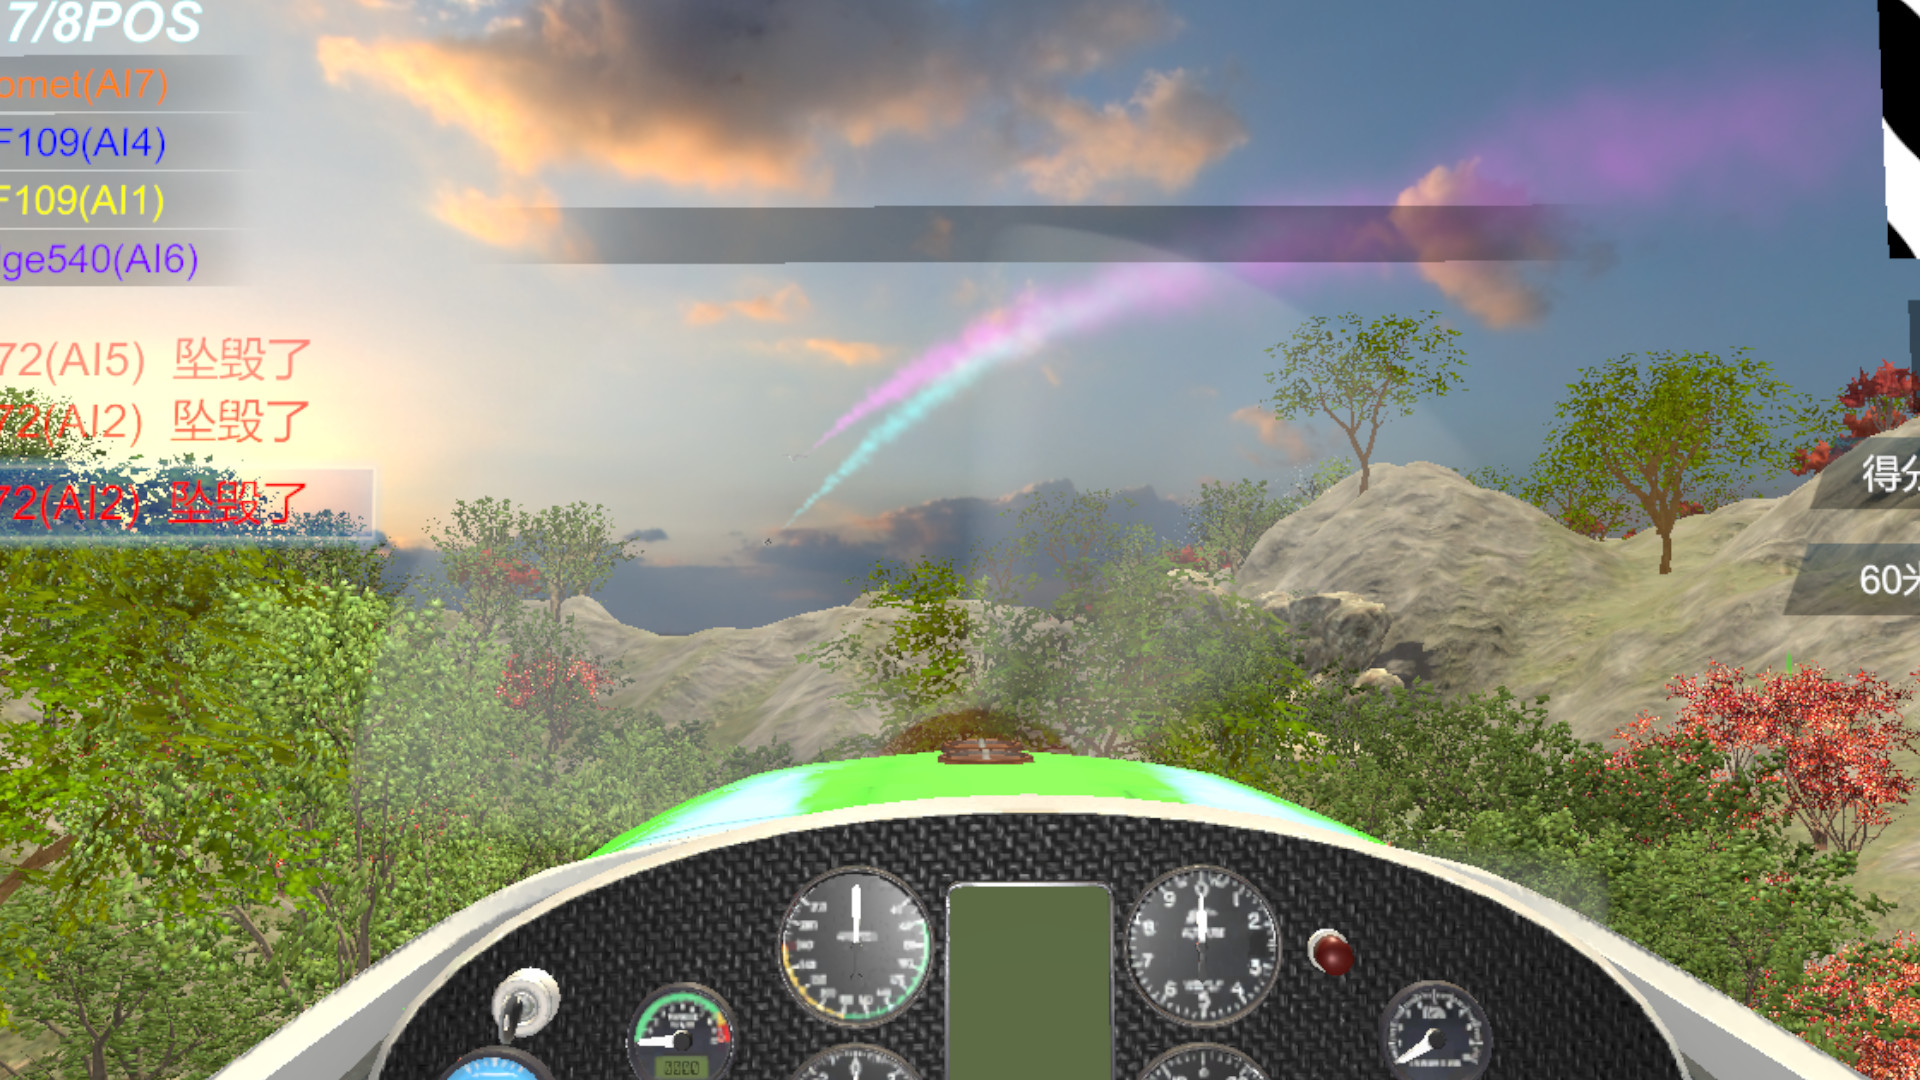 Air Racing VR Free Download